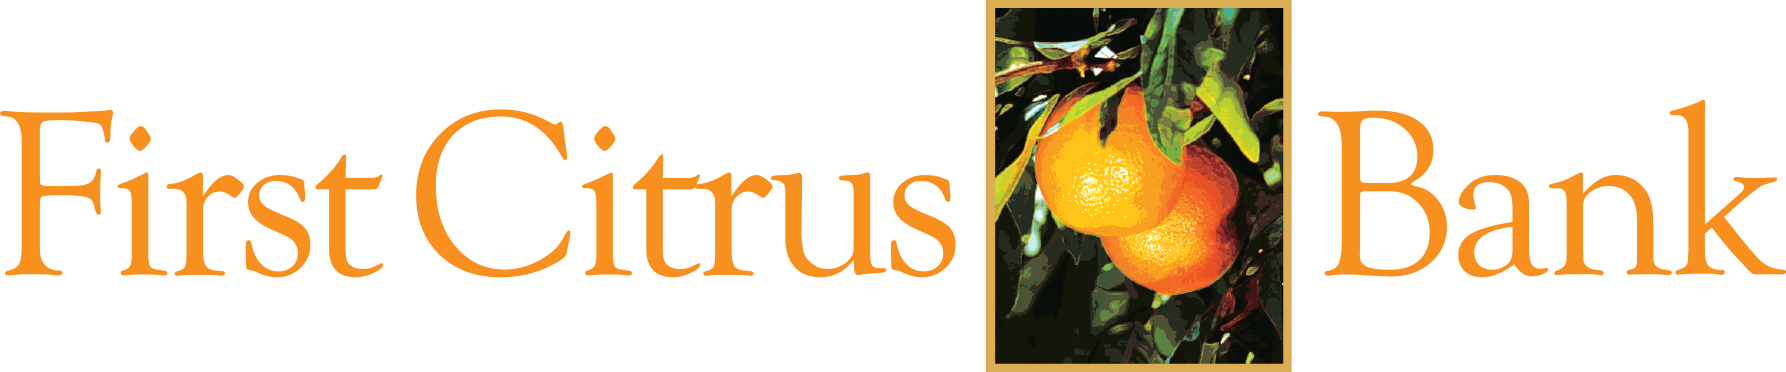 First Citrus Bank